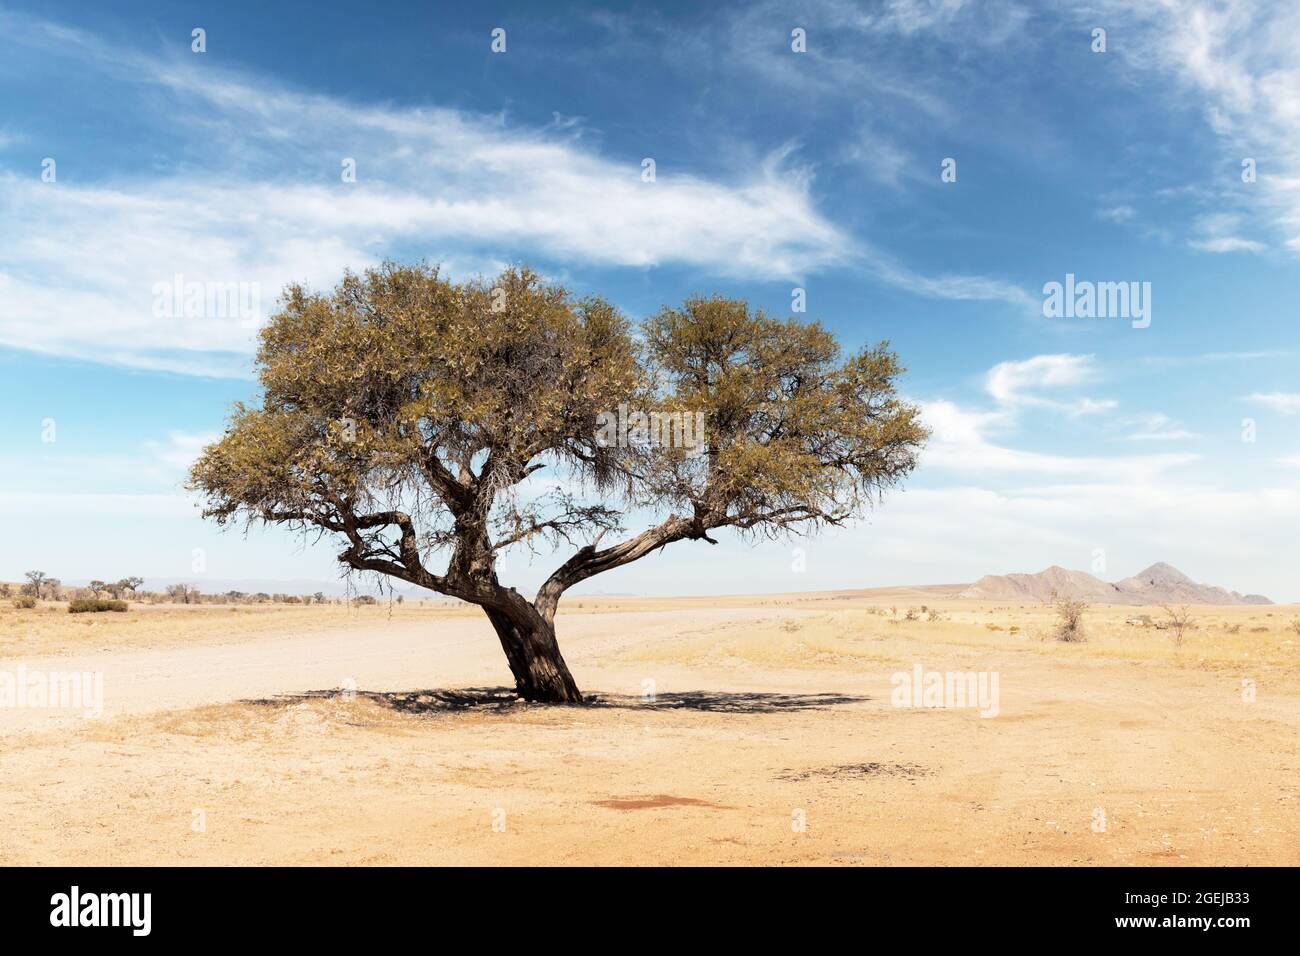 Paysage tupical de Namibie, Afrique. Acacia simple, désert et montagnes sur fond et savane jaune avec fond bleu ciel Banque D'Images